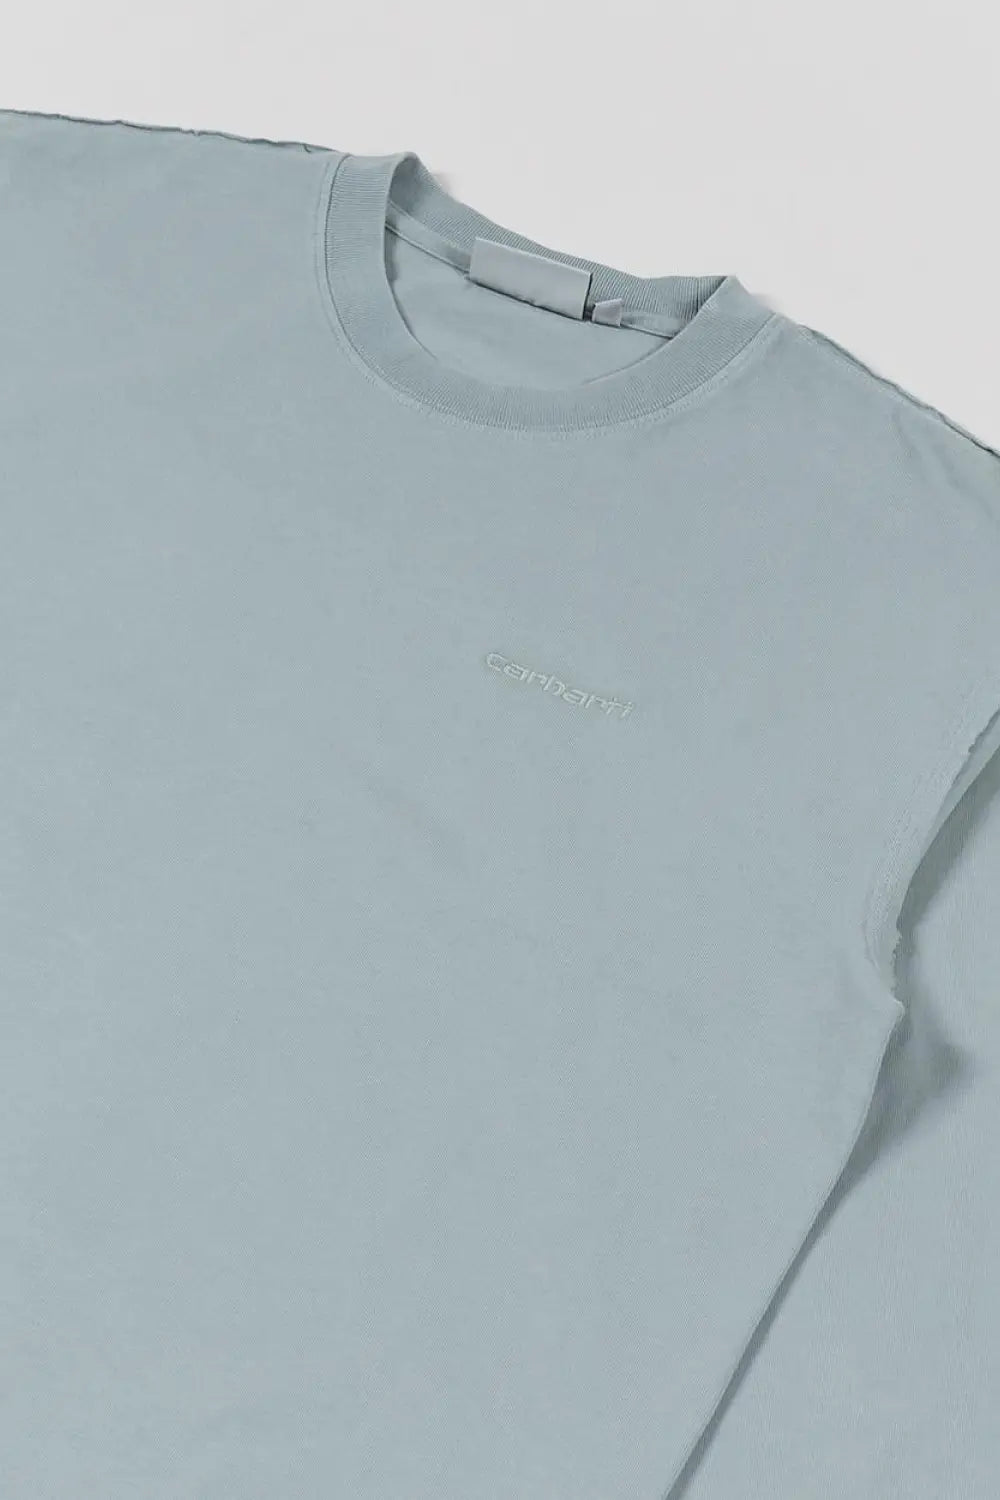 Carhartt WIP Marfa Long Sleeve T-Shirt Top